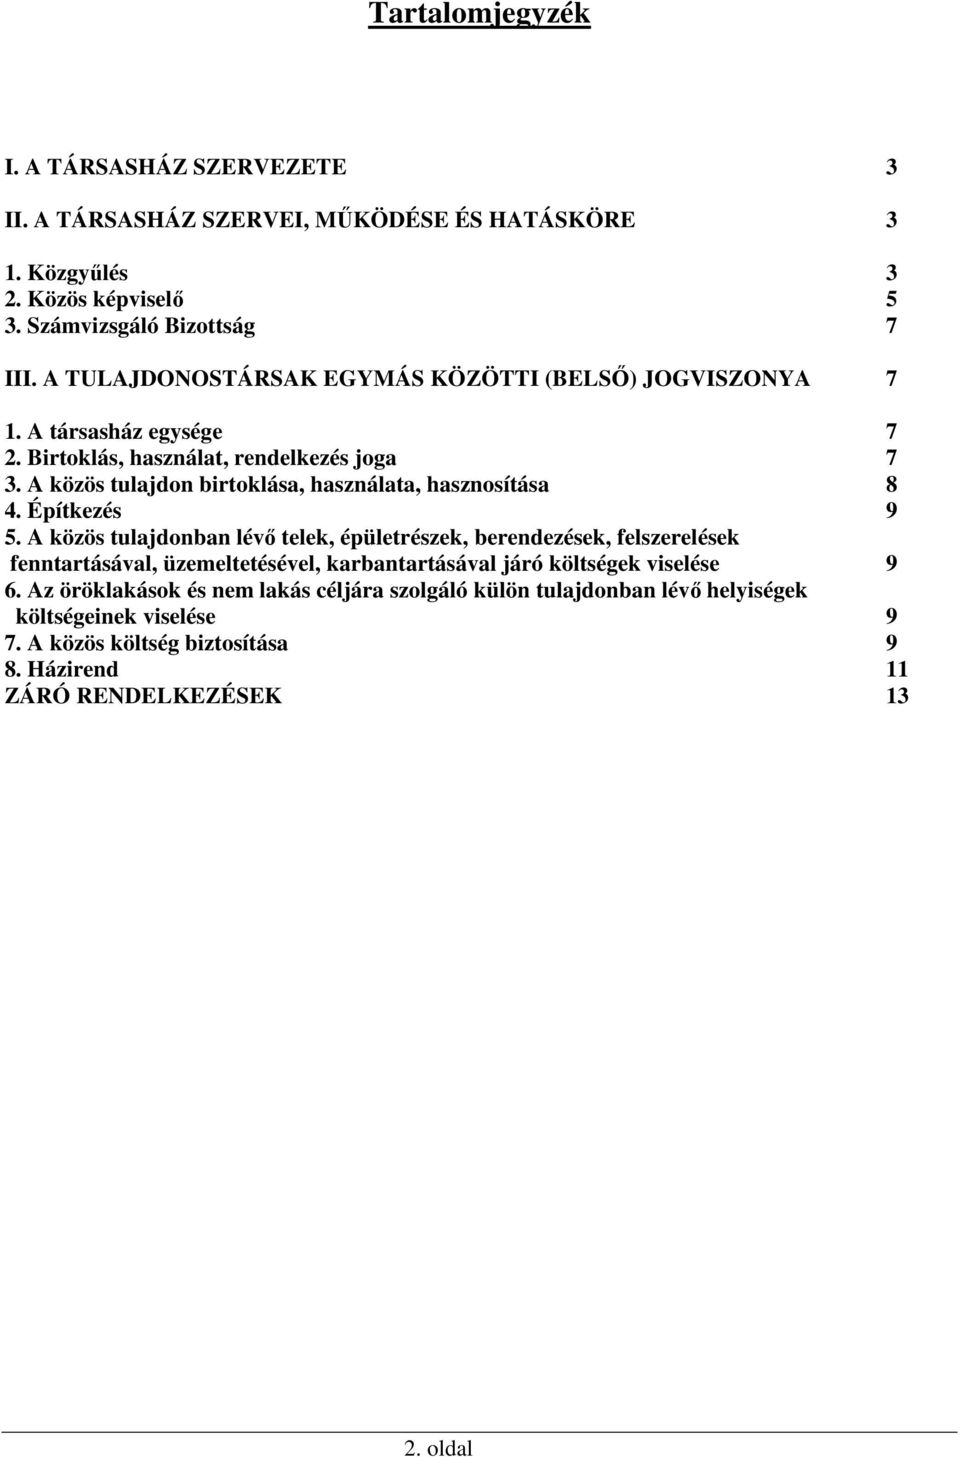 Tartalomjegyzék I. A TÁRSASHÁZ SZERVEZETE Közgyűlés 3 2. Közös képviselő 5  3. Számvizsgáló Bizottság 7 - PDF Ingyenes letöltés